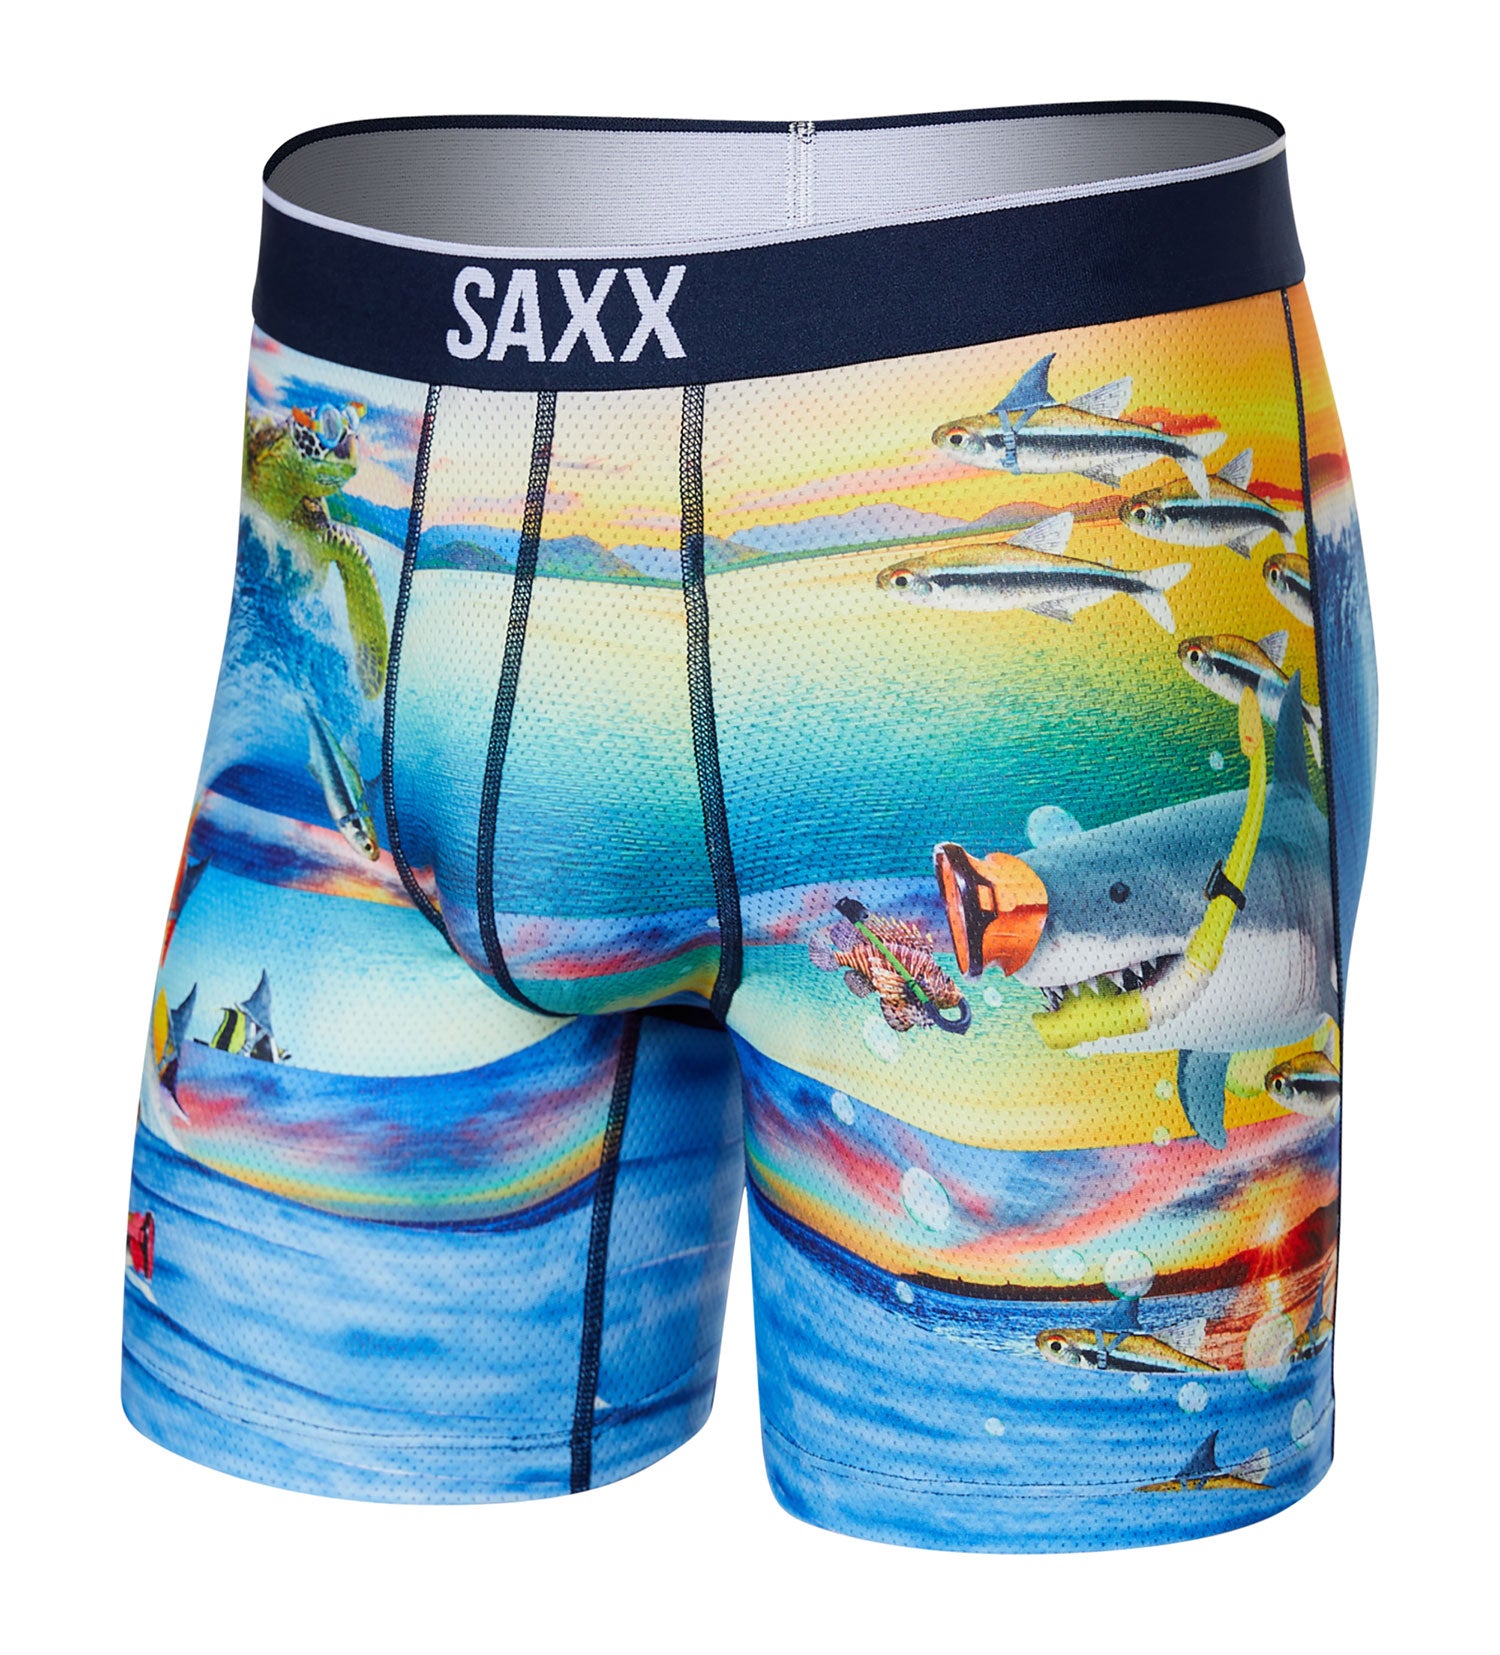 SAXX Ballpark Pouch DayTripper Men's Boxer Brief Underwear Large MINT FREE  SHIP - Helia Beer Co